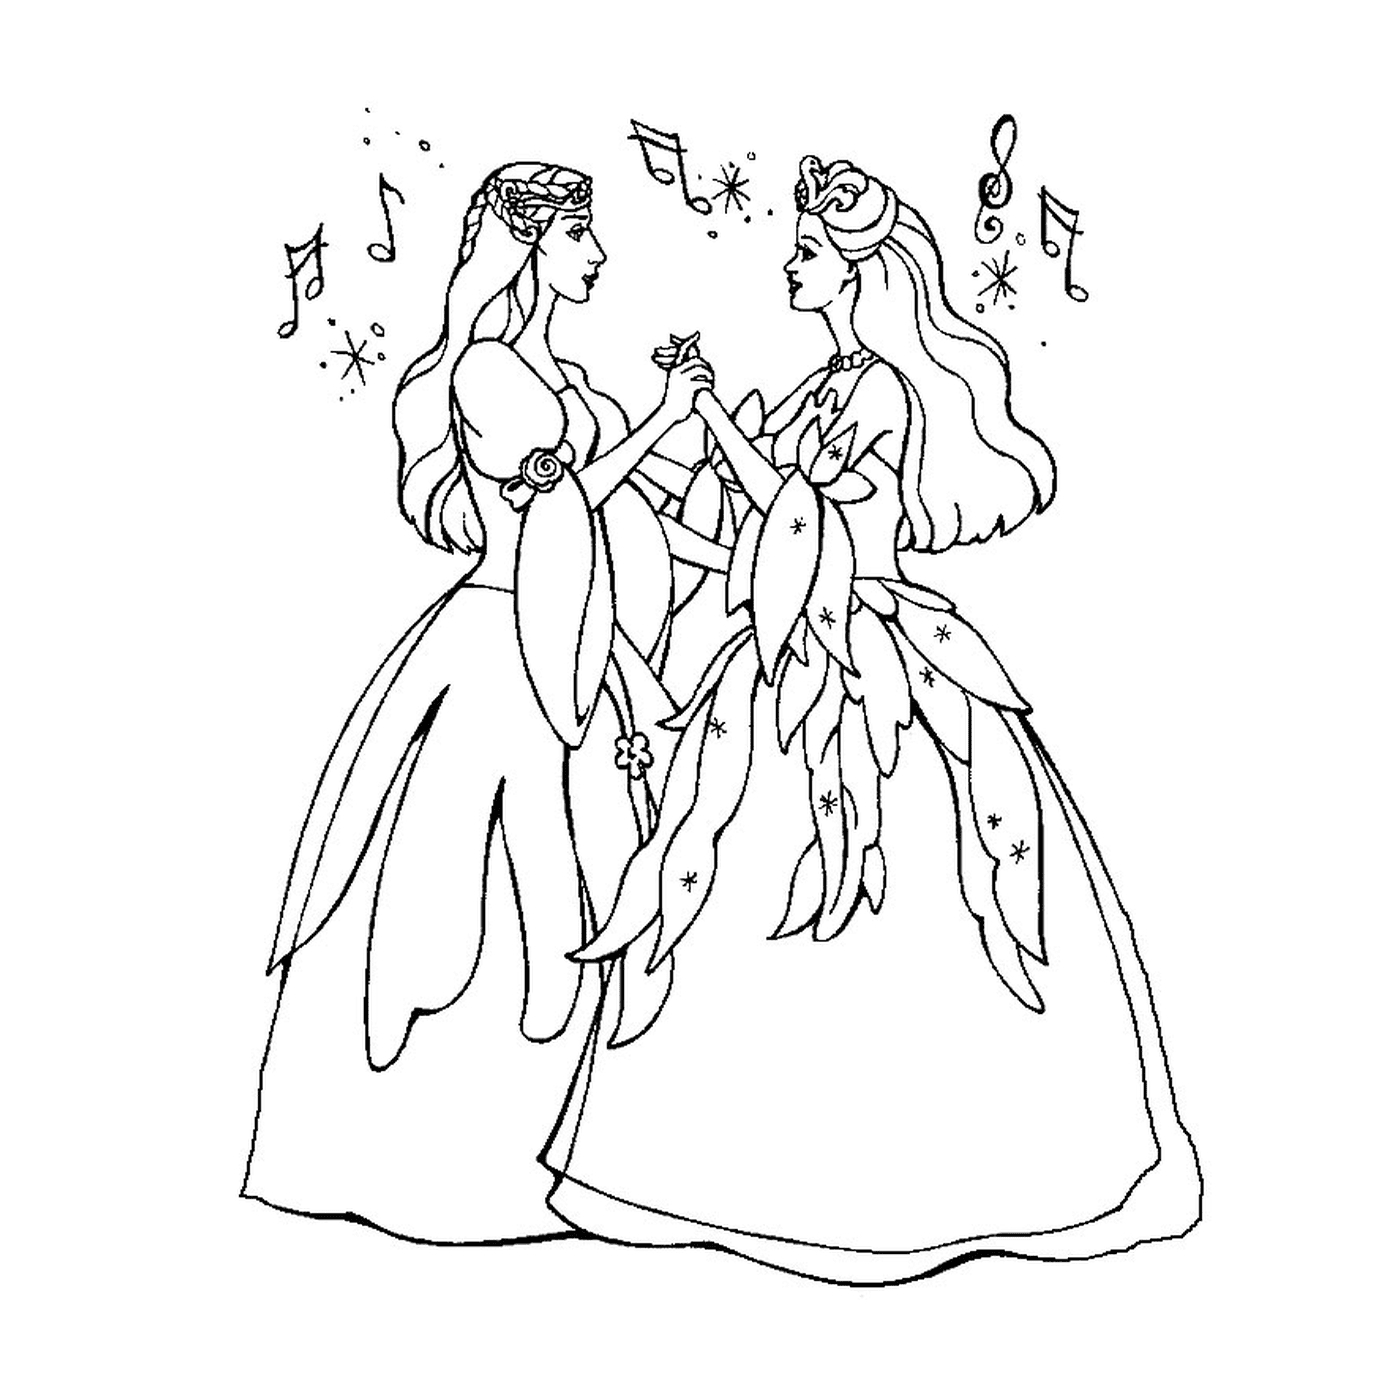  两个女人打扮成仙女 